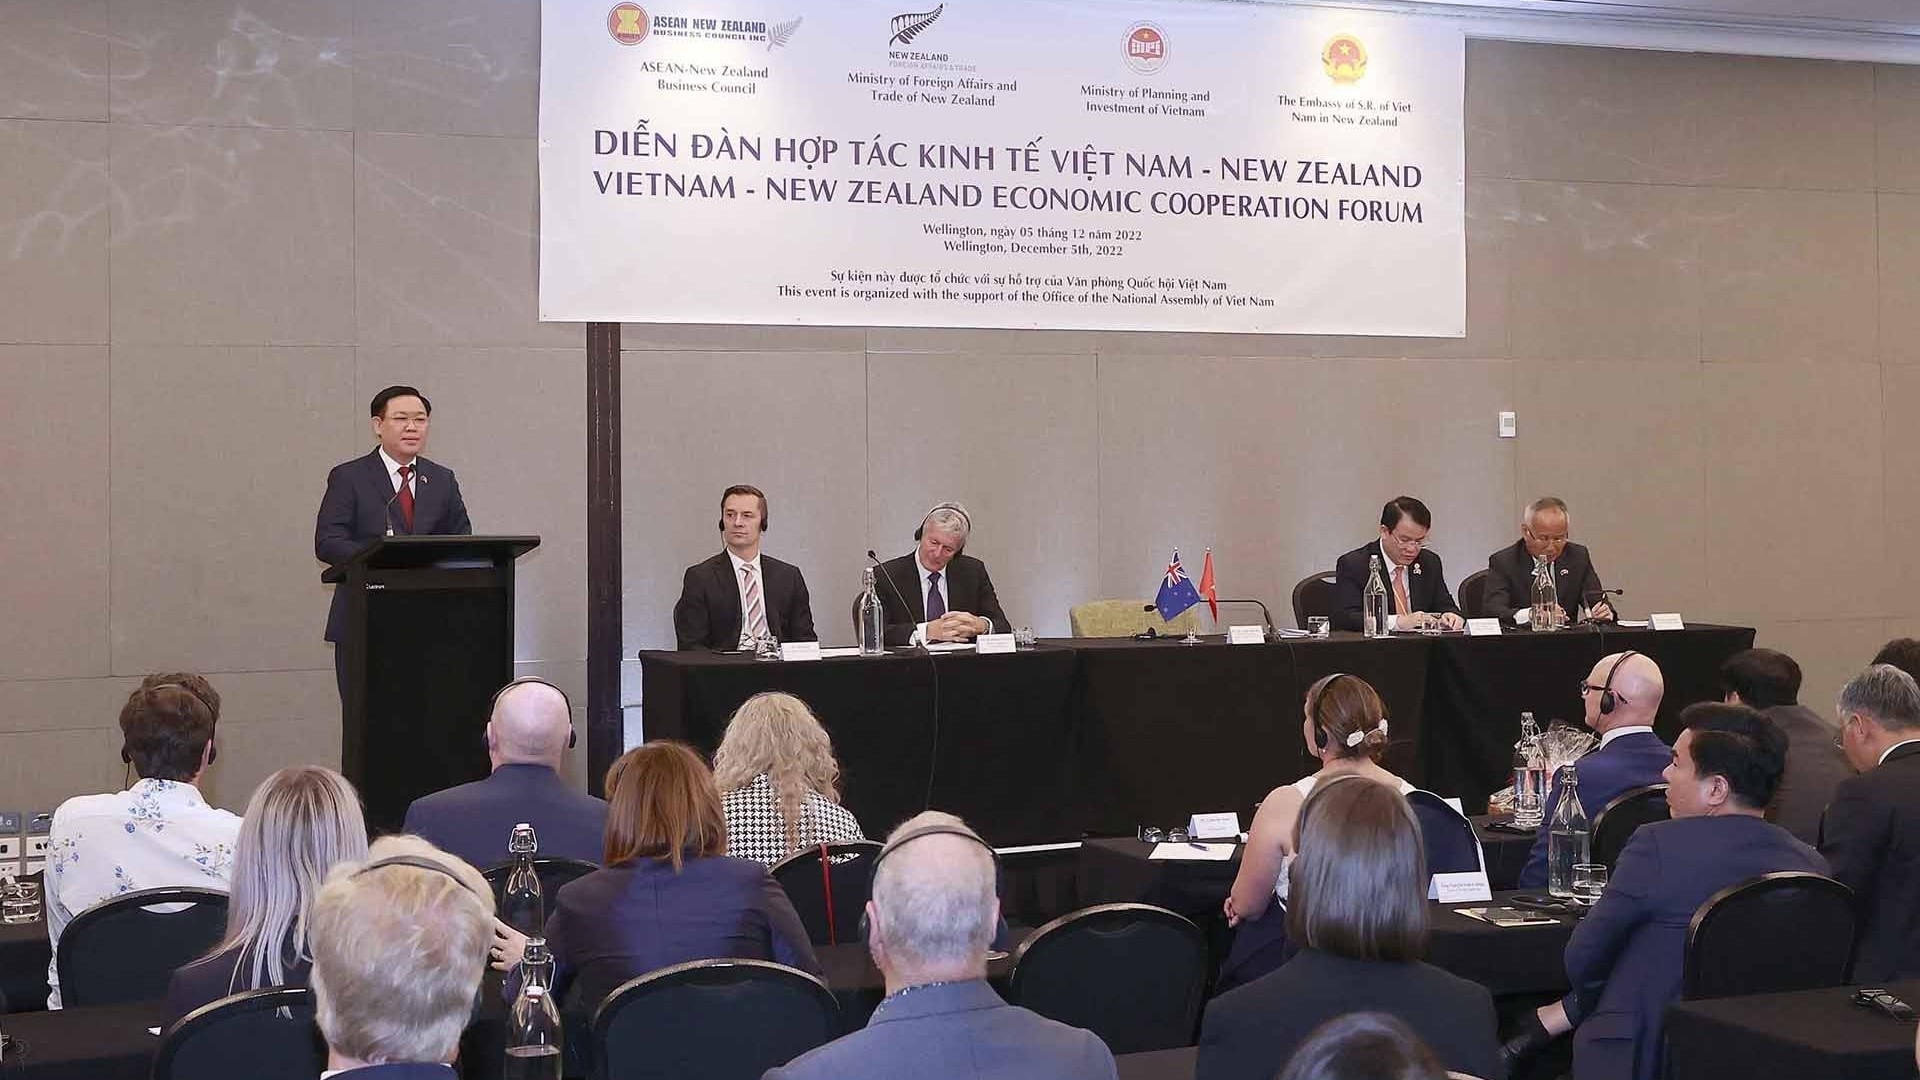 Nhiều doanh nghiệp New Zealand đang tìm kiếm cơ hội hợp tác tại Việt Nam